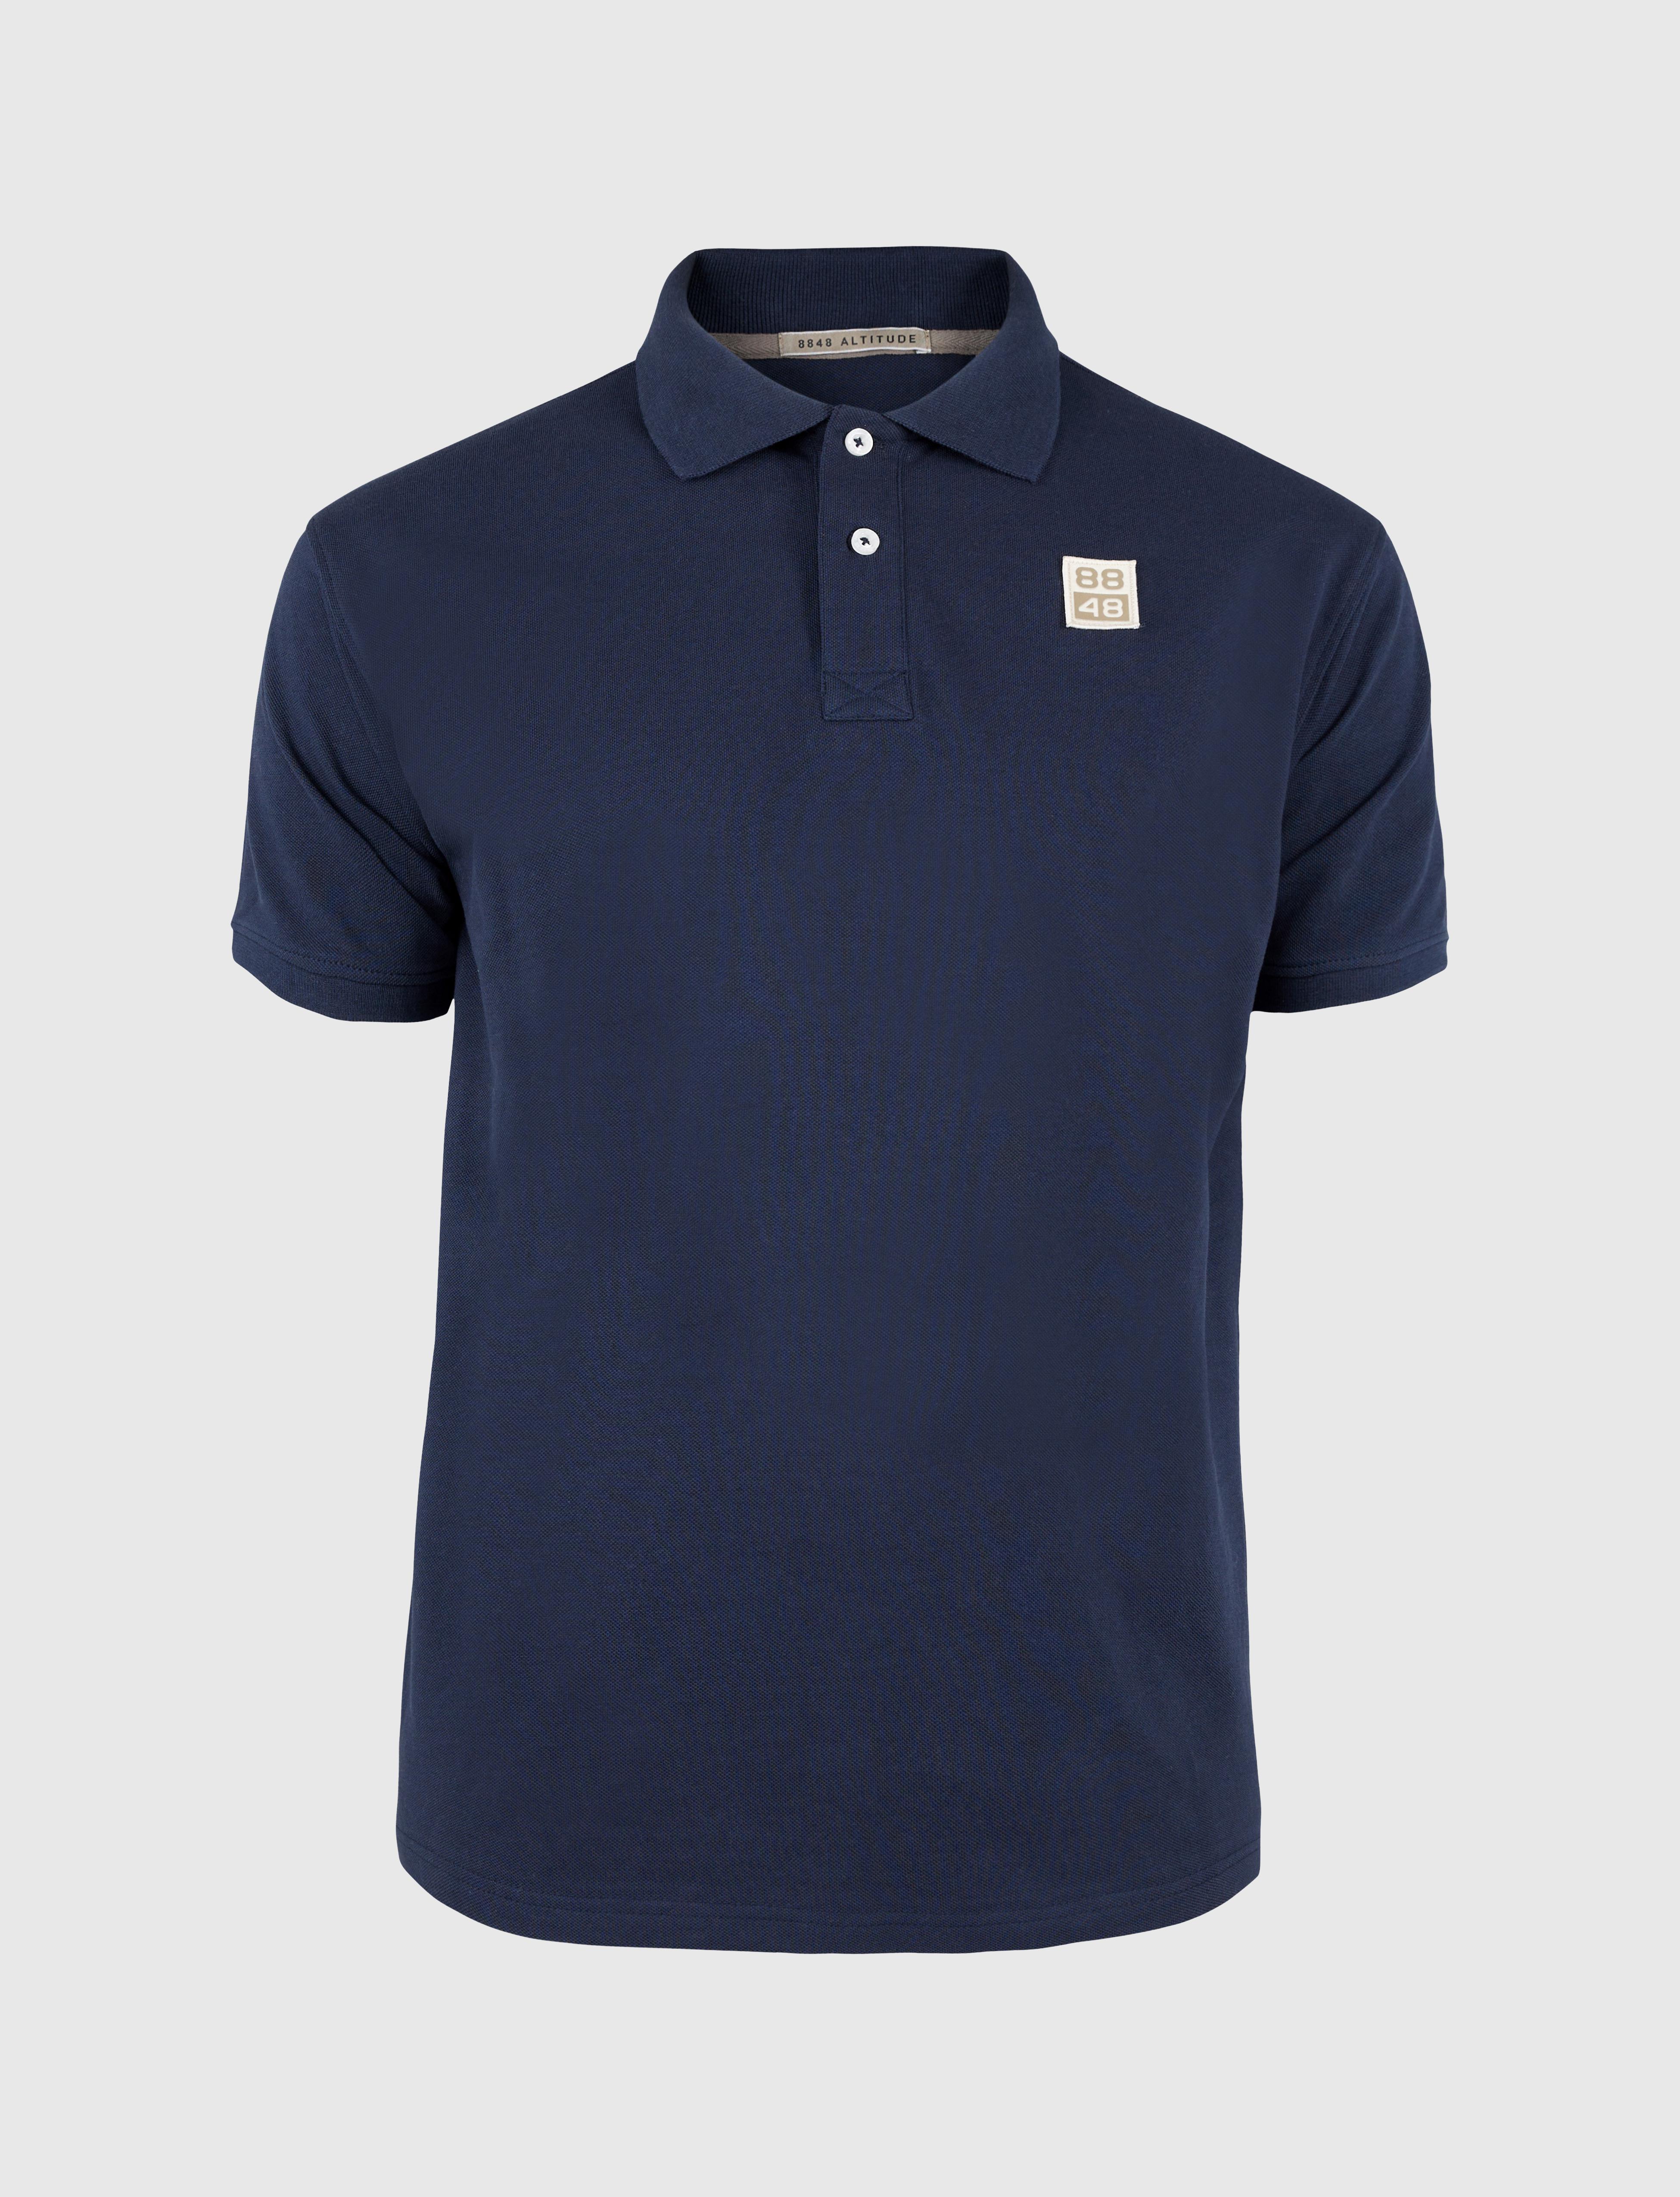 88 Logo Polo Shirt Navy - Dunkelblaue Polo Hemd Herren